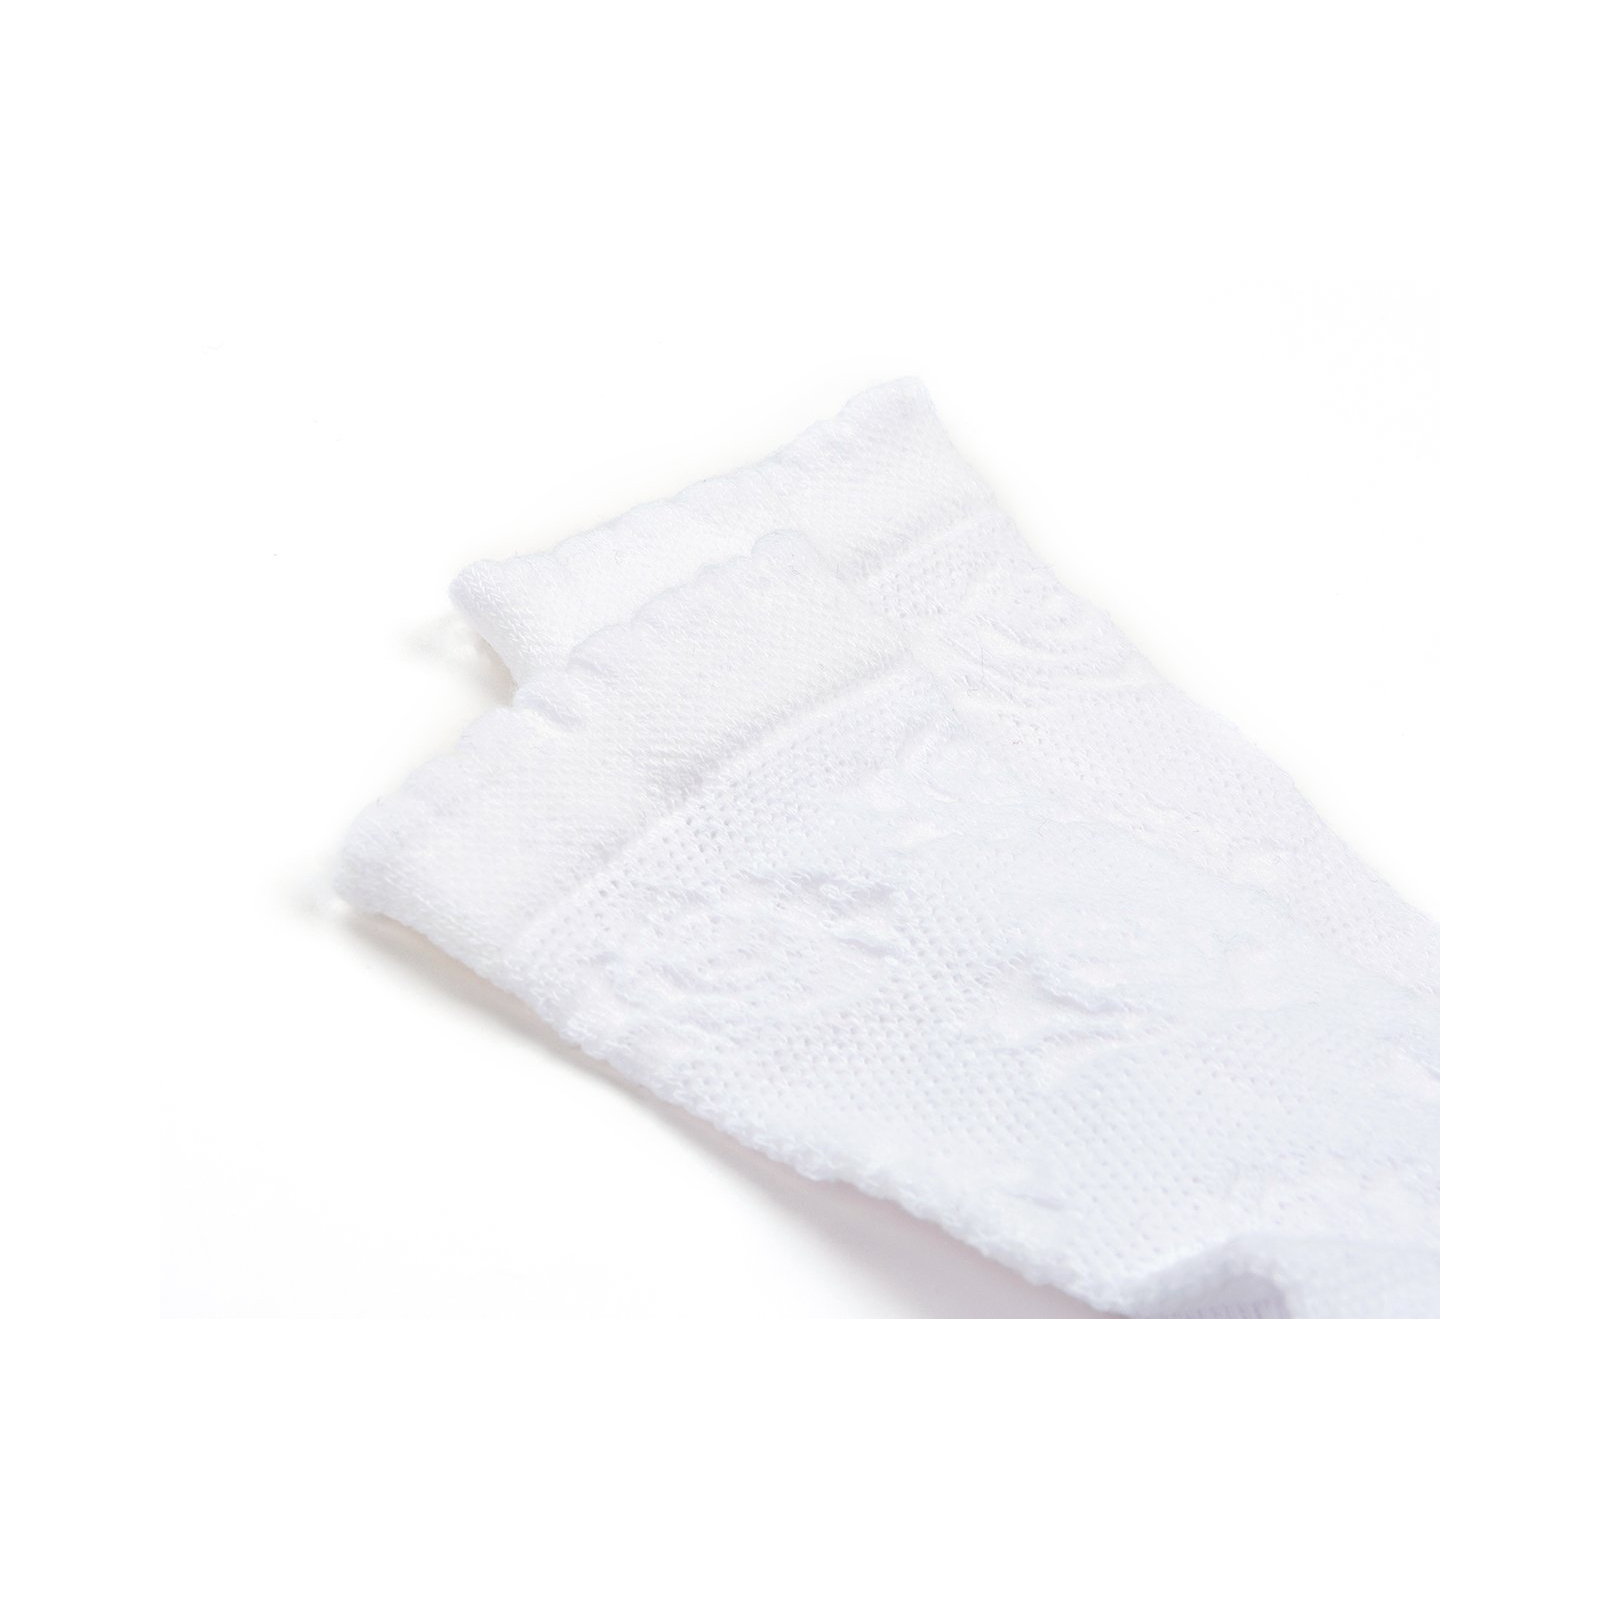 Носки детские BNM ажурные (M0C0101-1230-9G-white) изображение 2